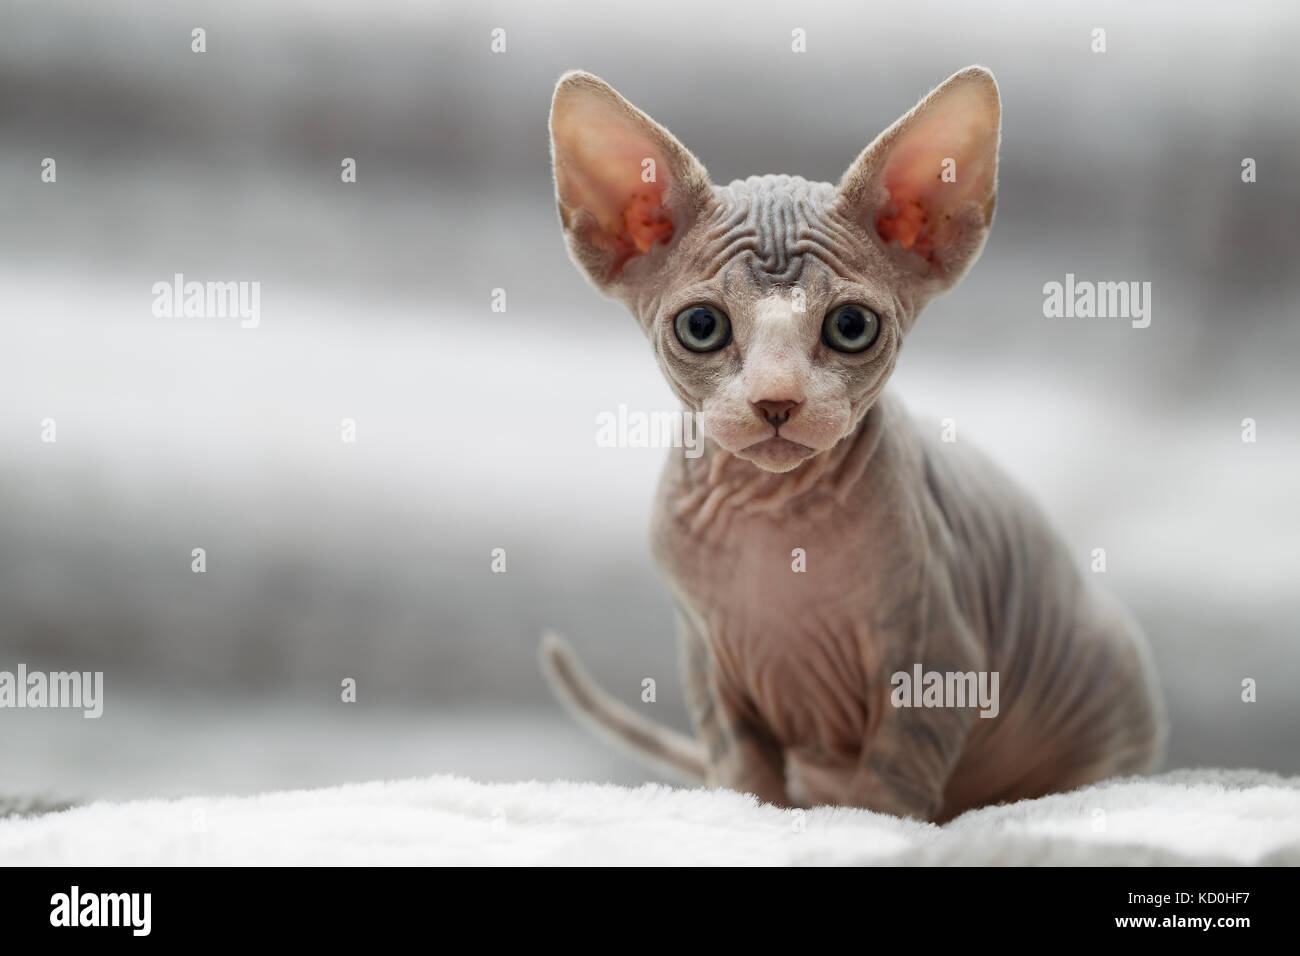 Tier Portrait von sphynx cat bei Camera suchen Stockfoto